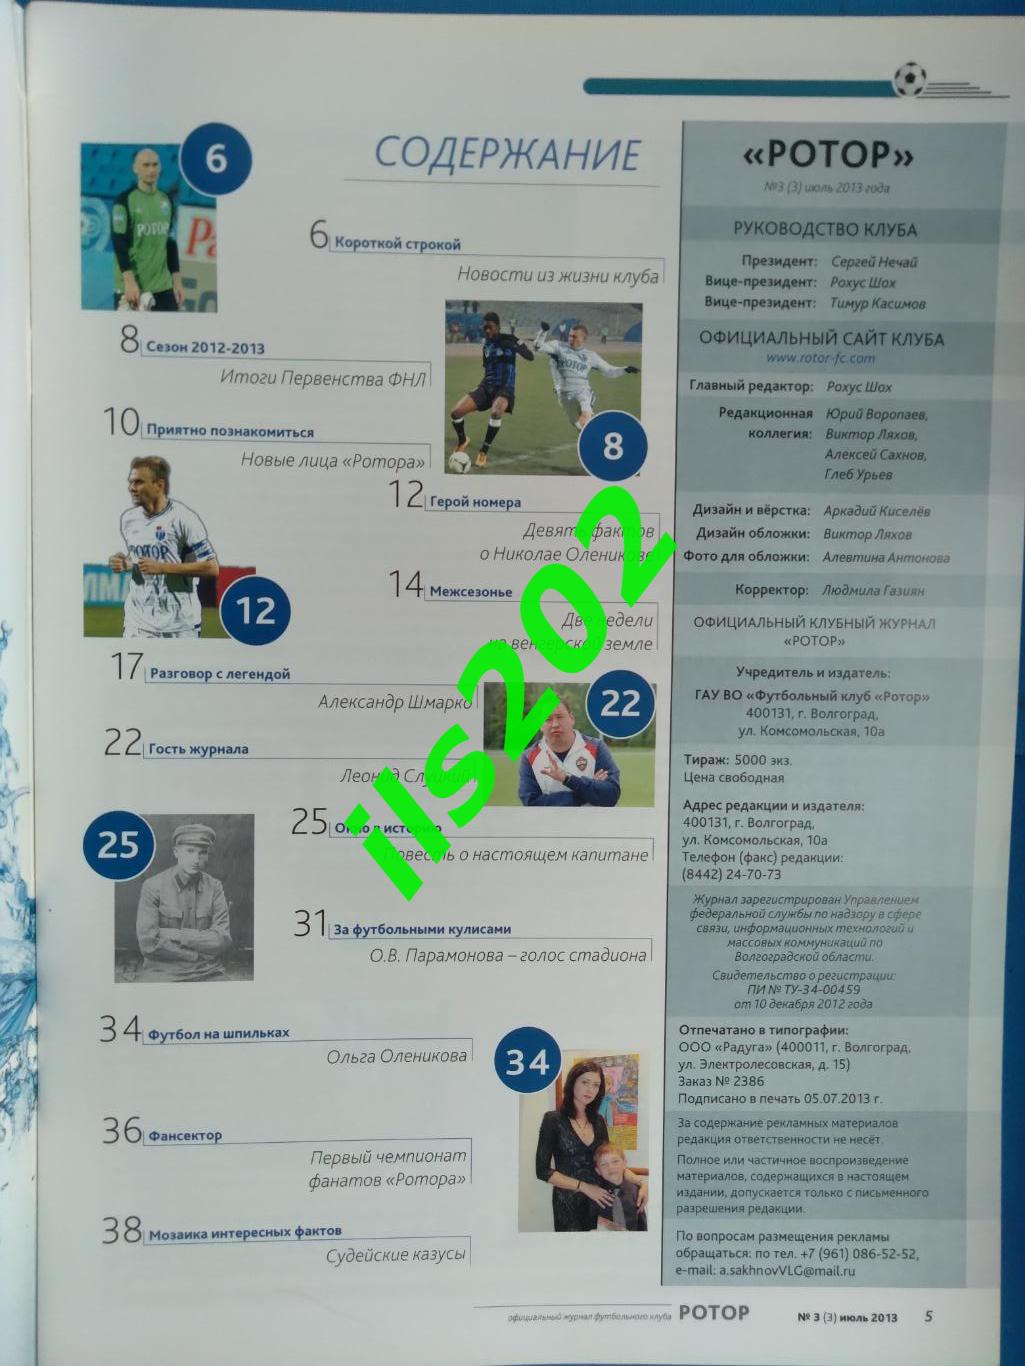 Ротор Волгоград официальный журнал клуба №3 (3) июль 2013 1